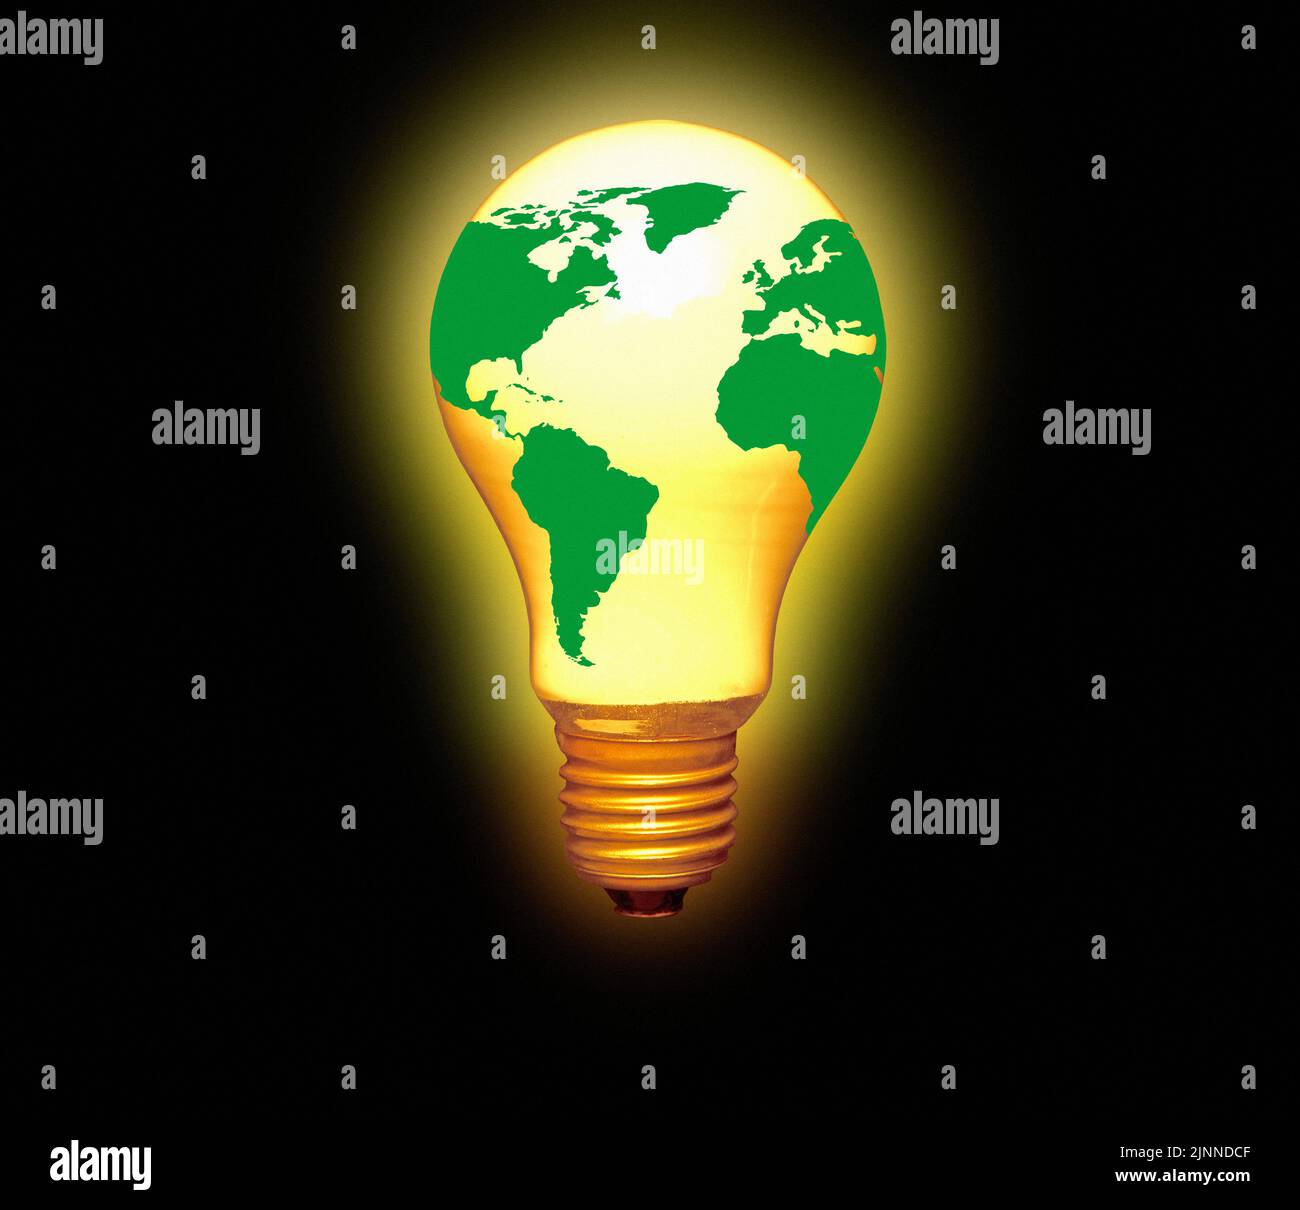 Energía global, ilustración conceptual. Foto de stock